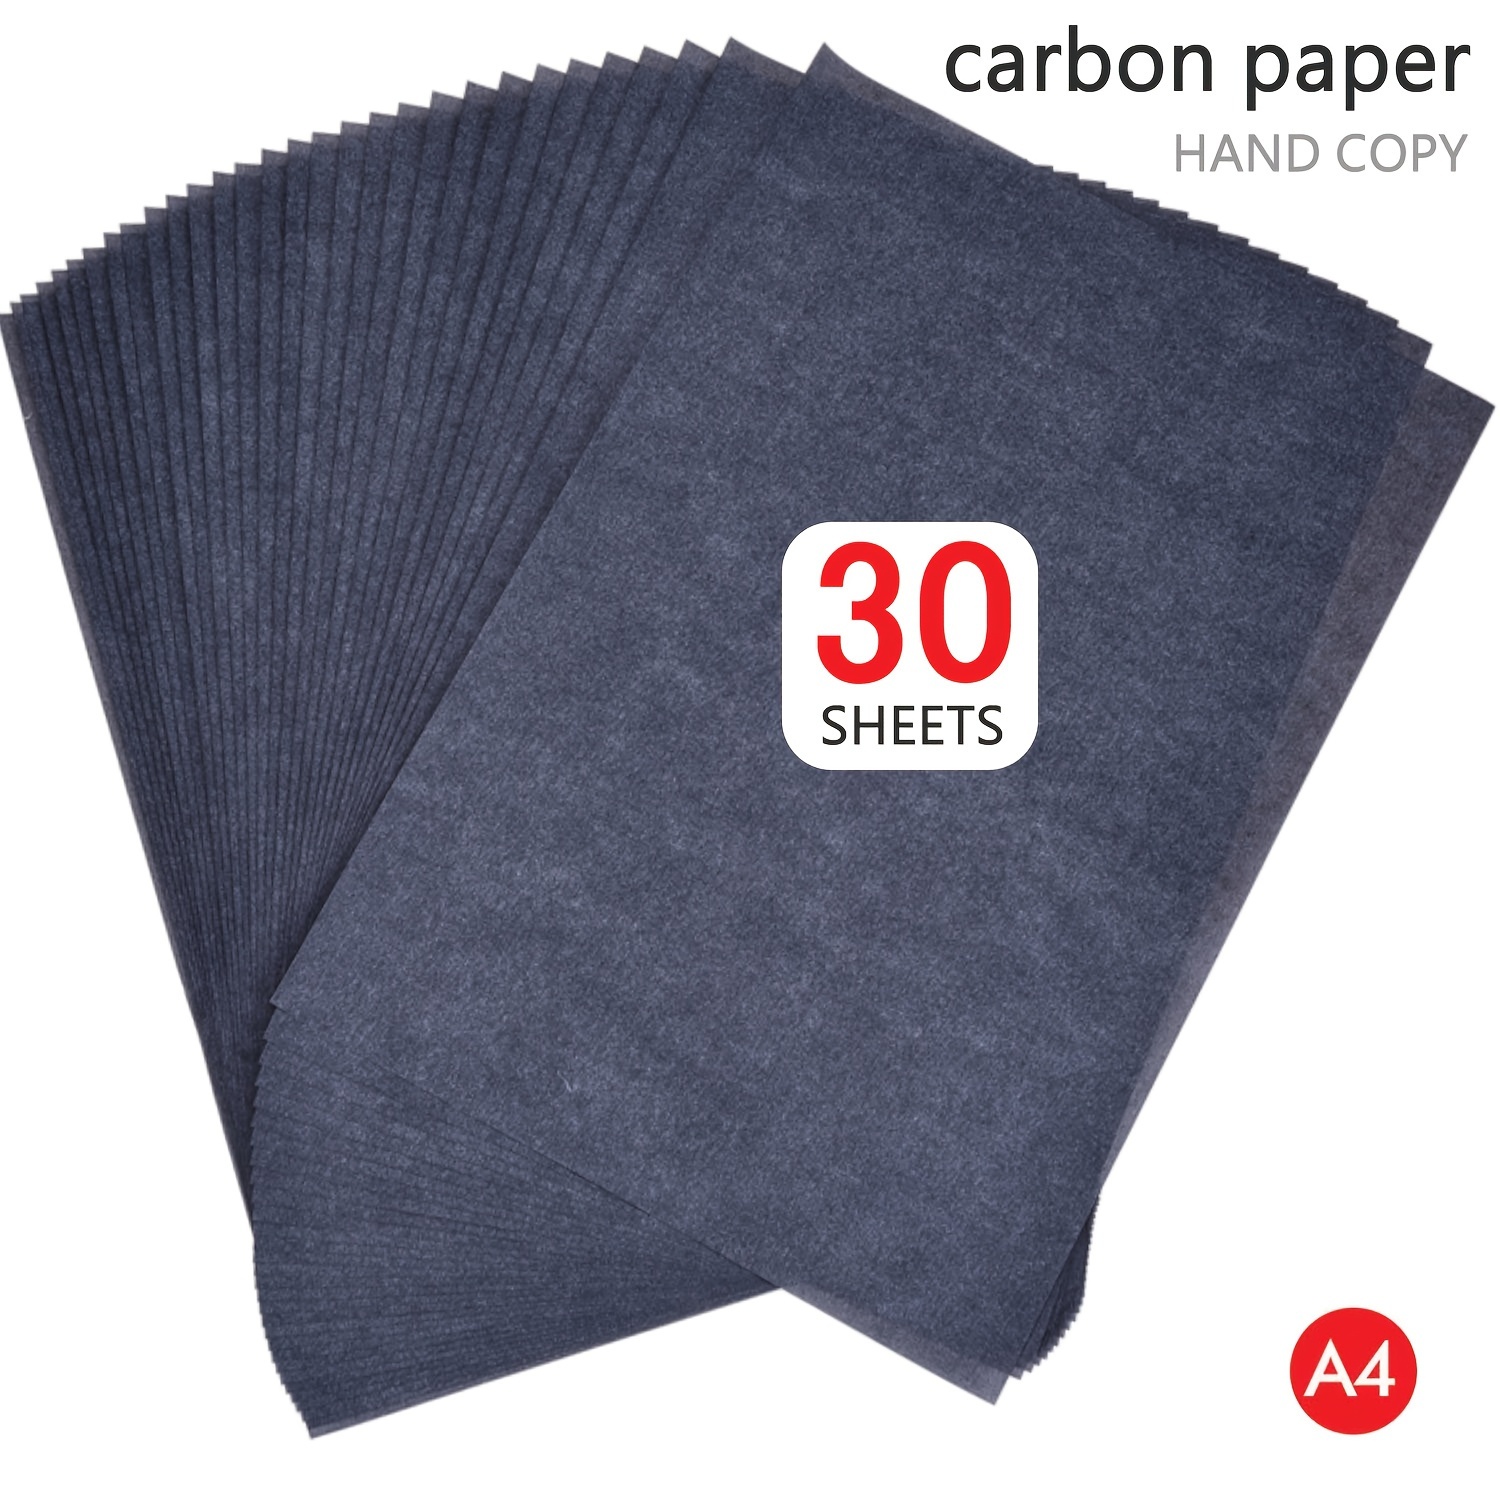 Carbon Copy Paper BLUE or BLACK A4 10 Sheets Hand Copy Duplicate Copy Paper  UK 